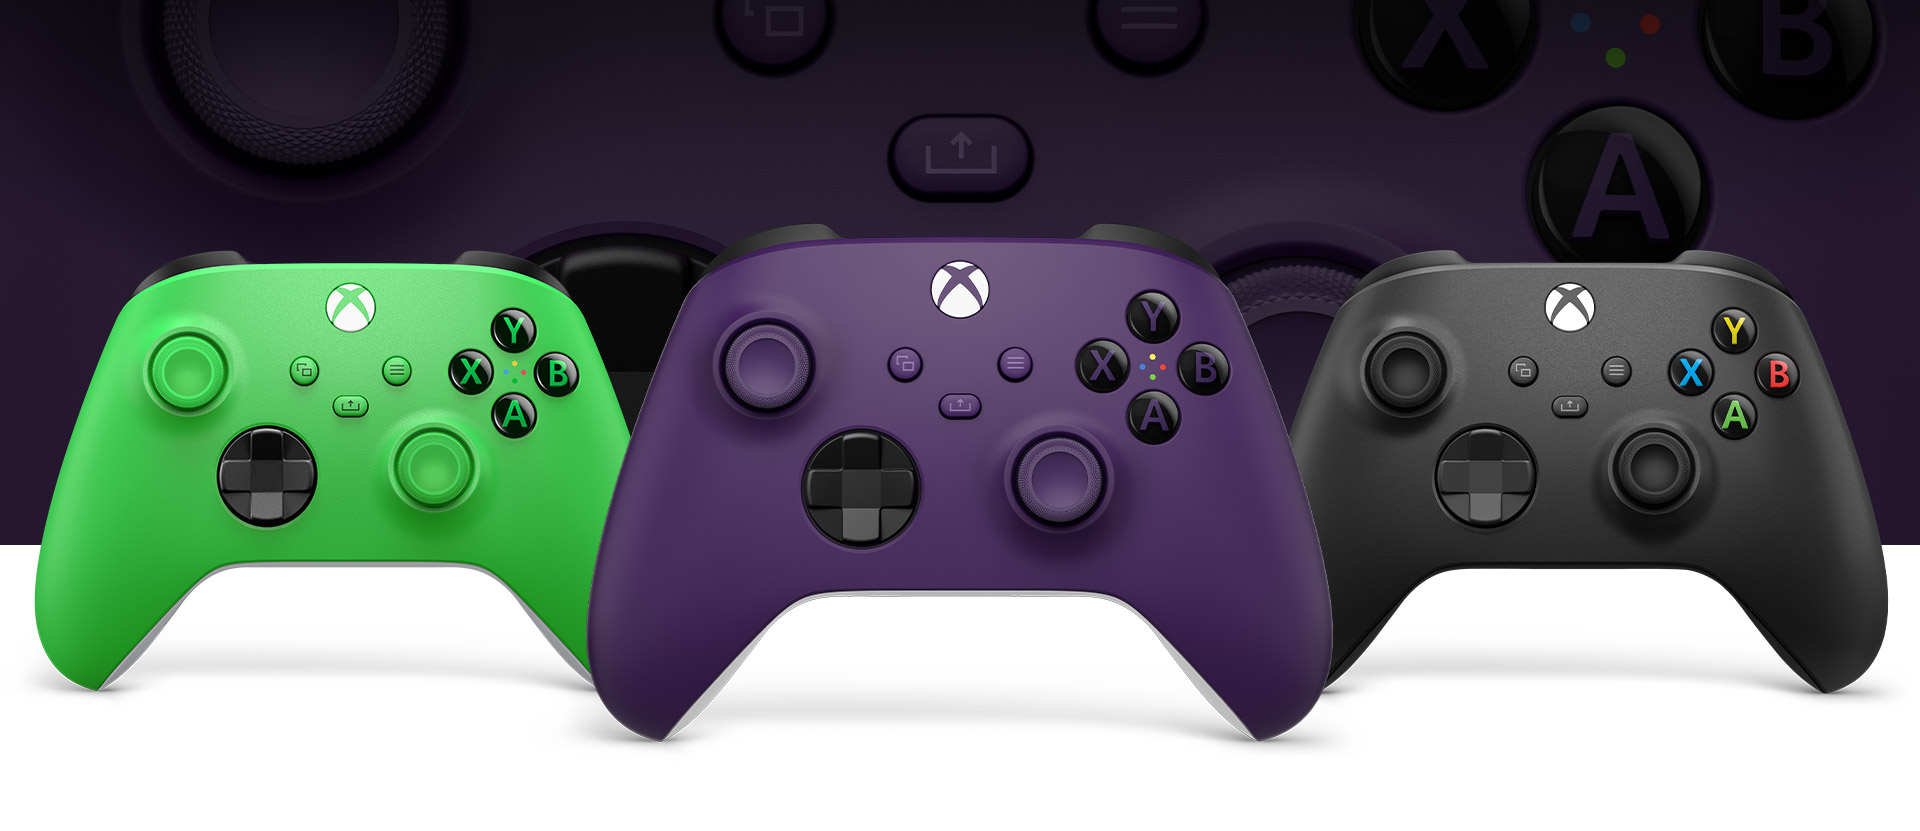 Soldaki Yeşil ve sağdaki Carbon Black oyun kumandalarının önünde duran Xbox Mor oyun kumandası